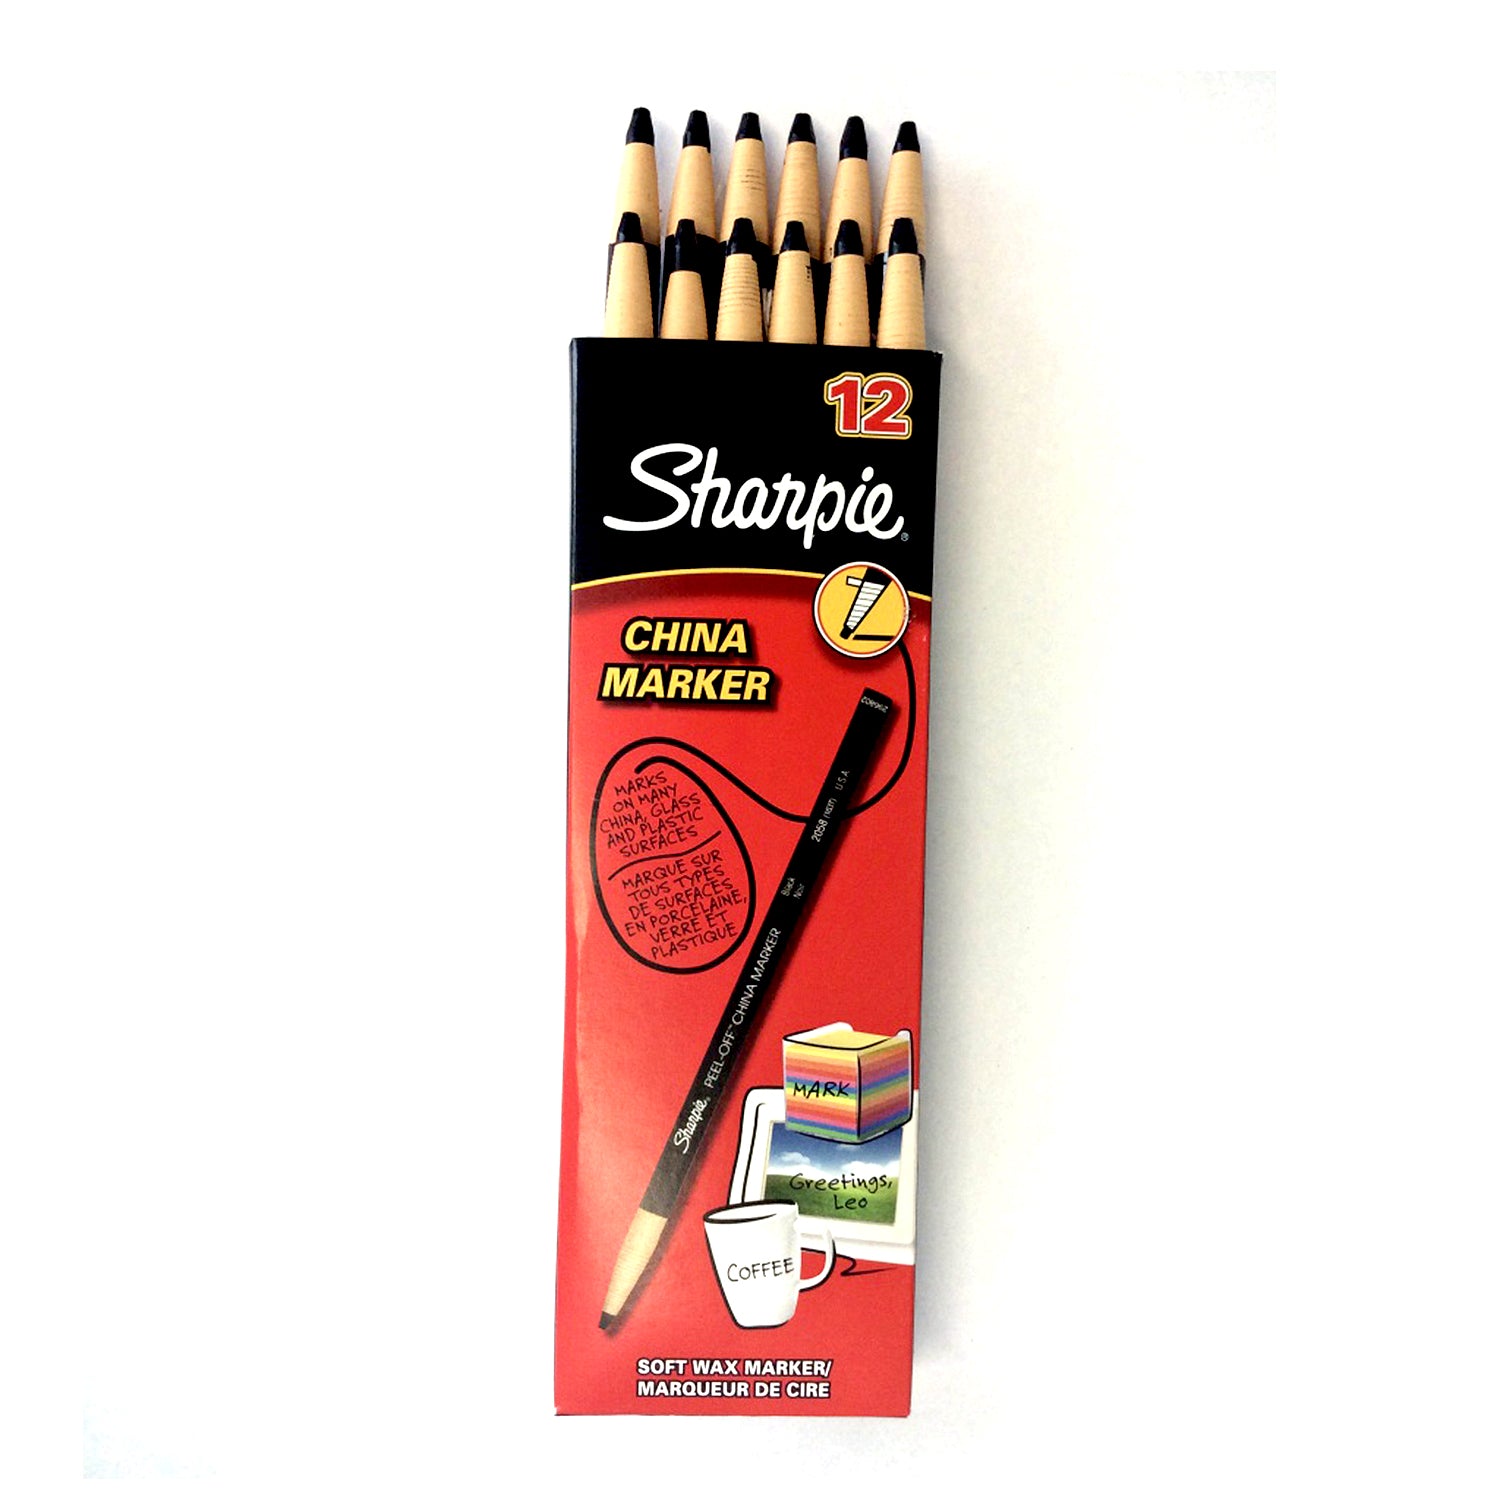 Sharpie China Marker, 12Pk - Catalogue #6351